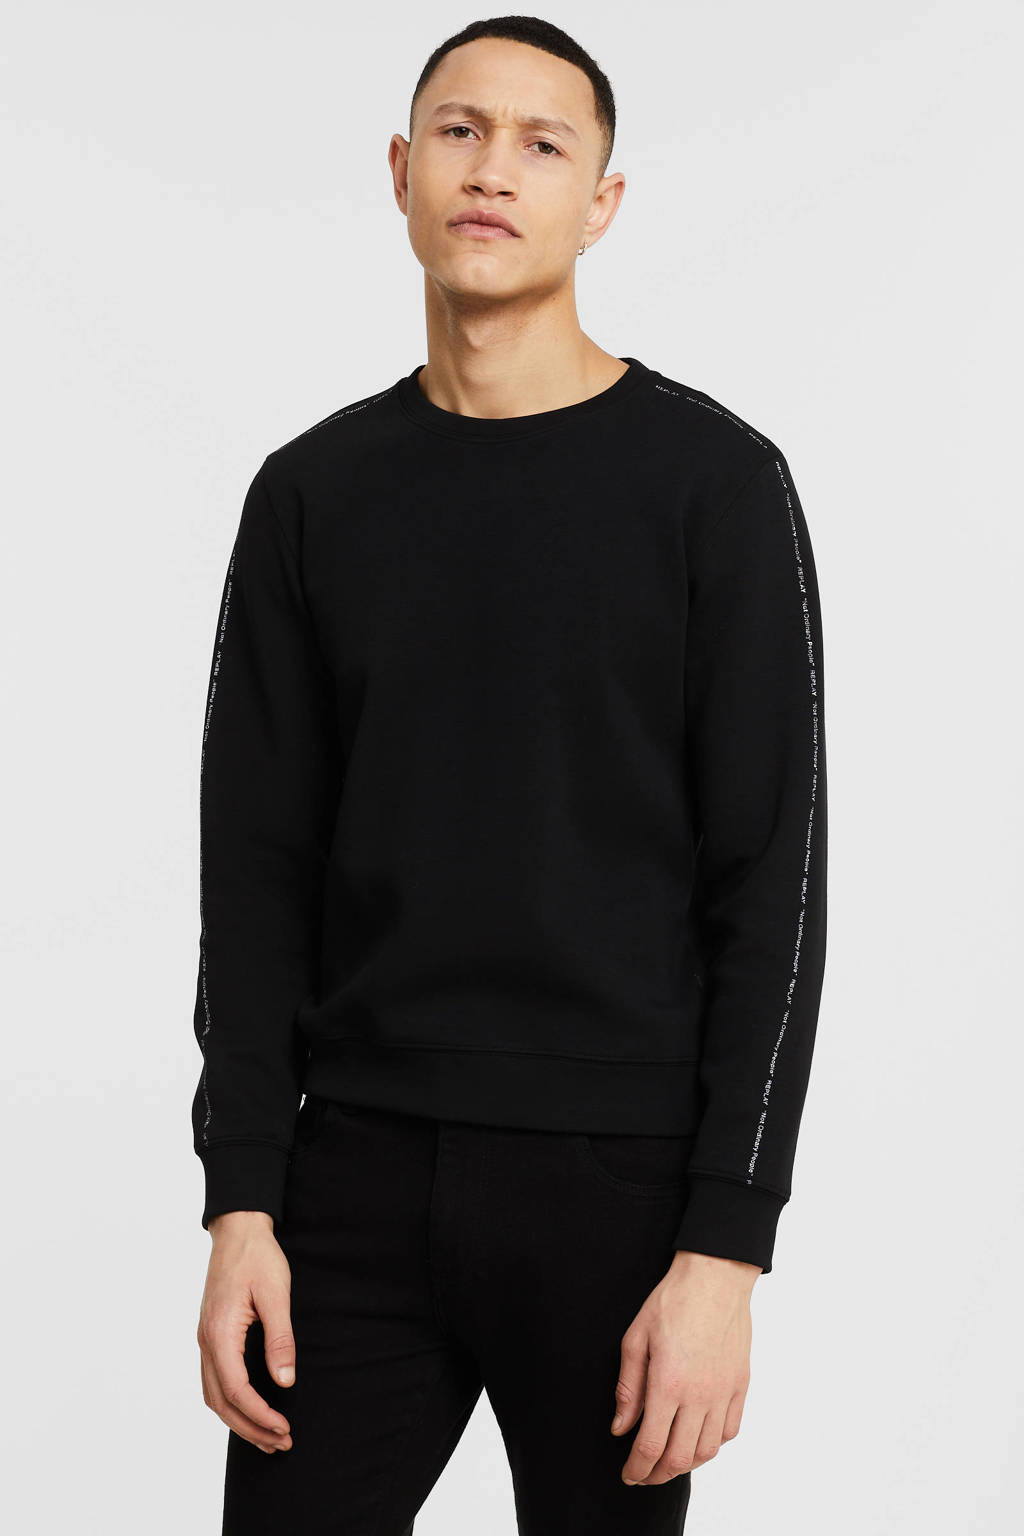 REPLAY sweater met contrastbies black, Black